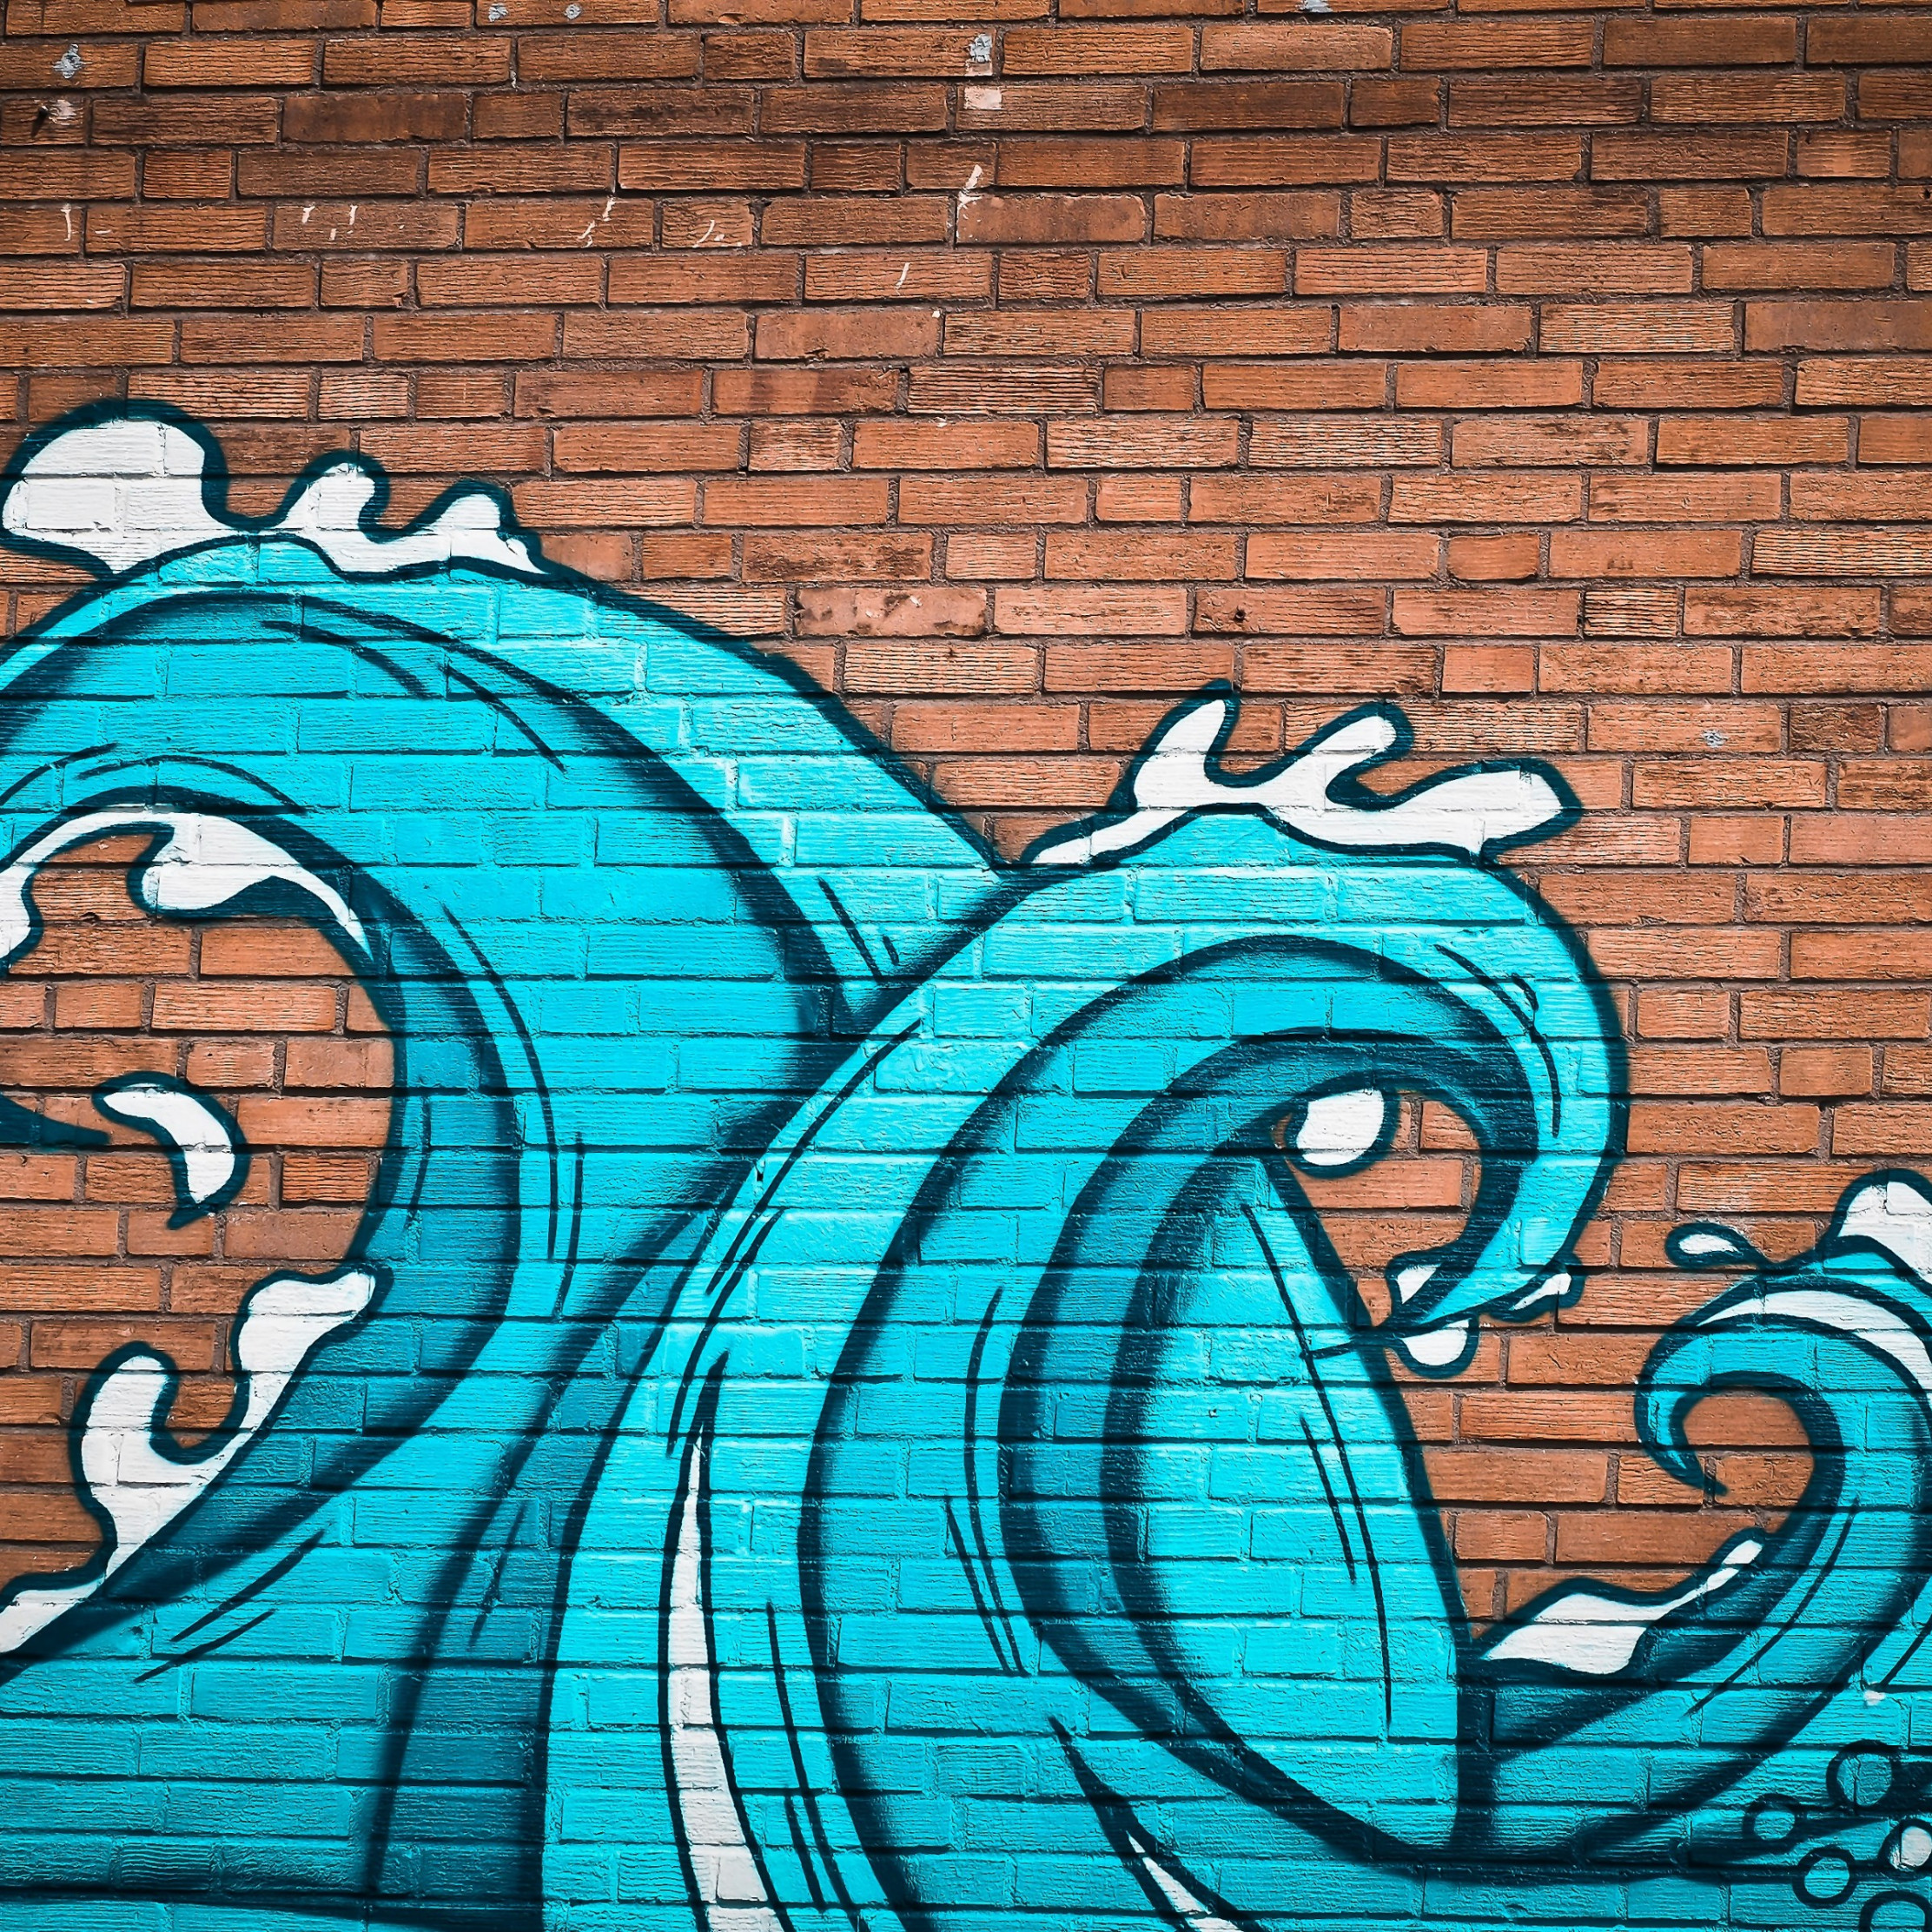 Graffiti waves on brick wall wallpaper 2224x2224